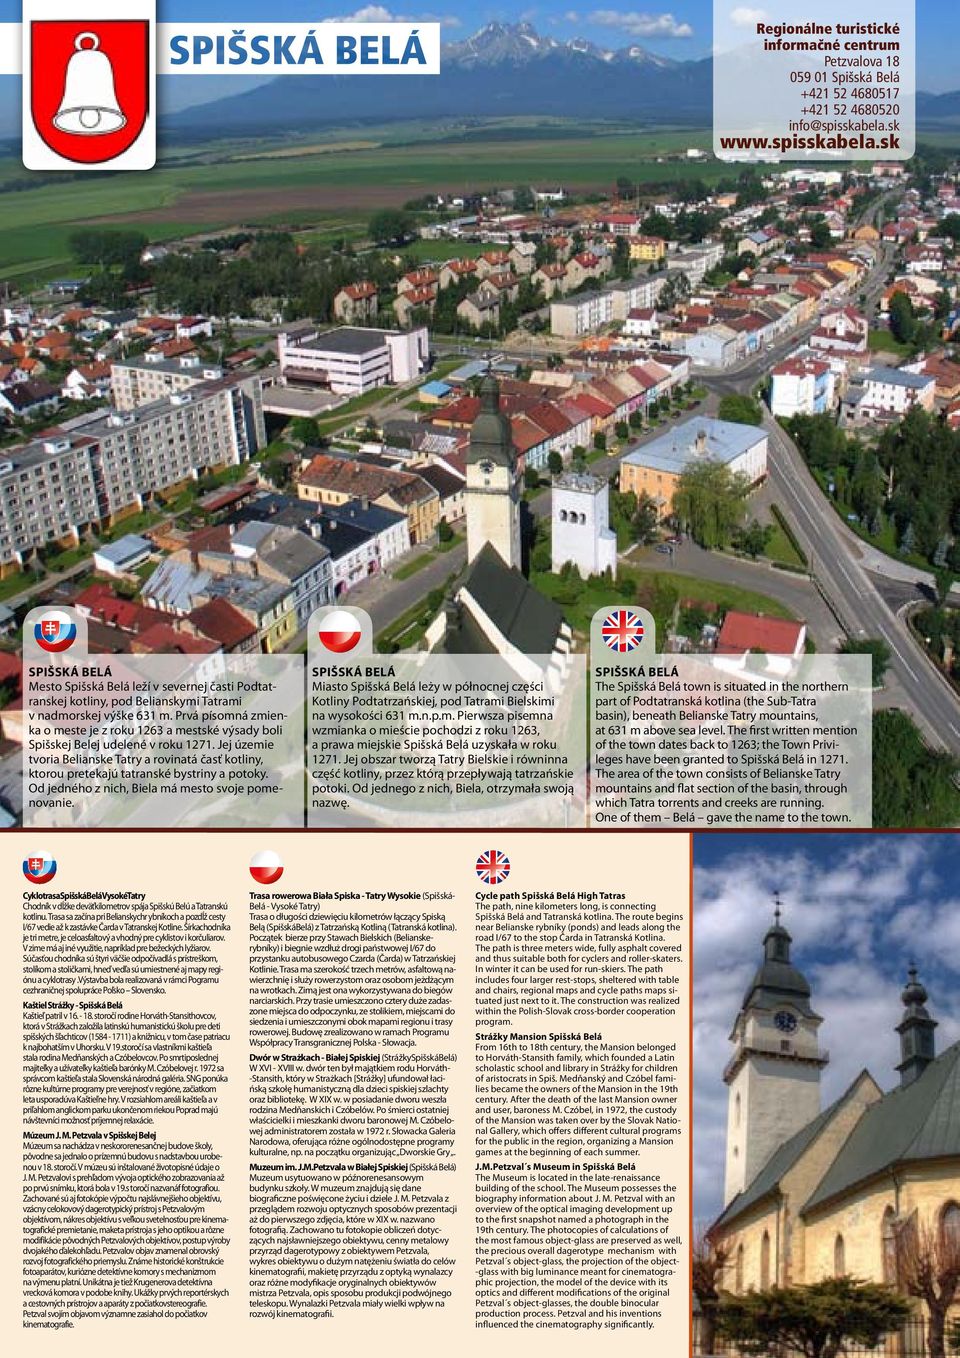 Prvá písomná zmienka o meste je z roku 1263 a mestské výsady boli Spišskej Belej udelené v roku 1271.